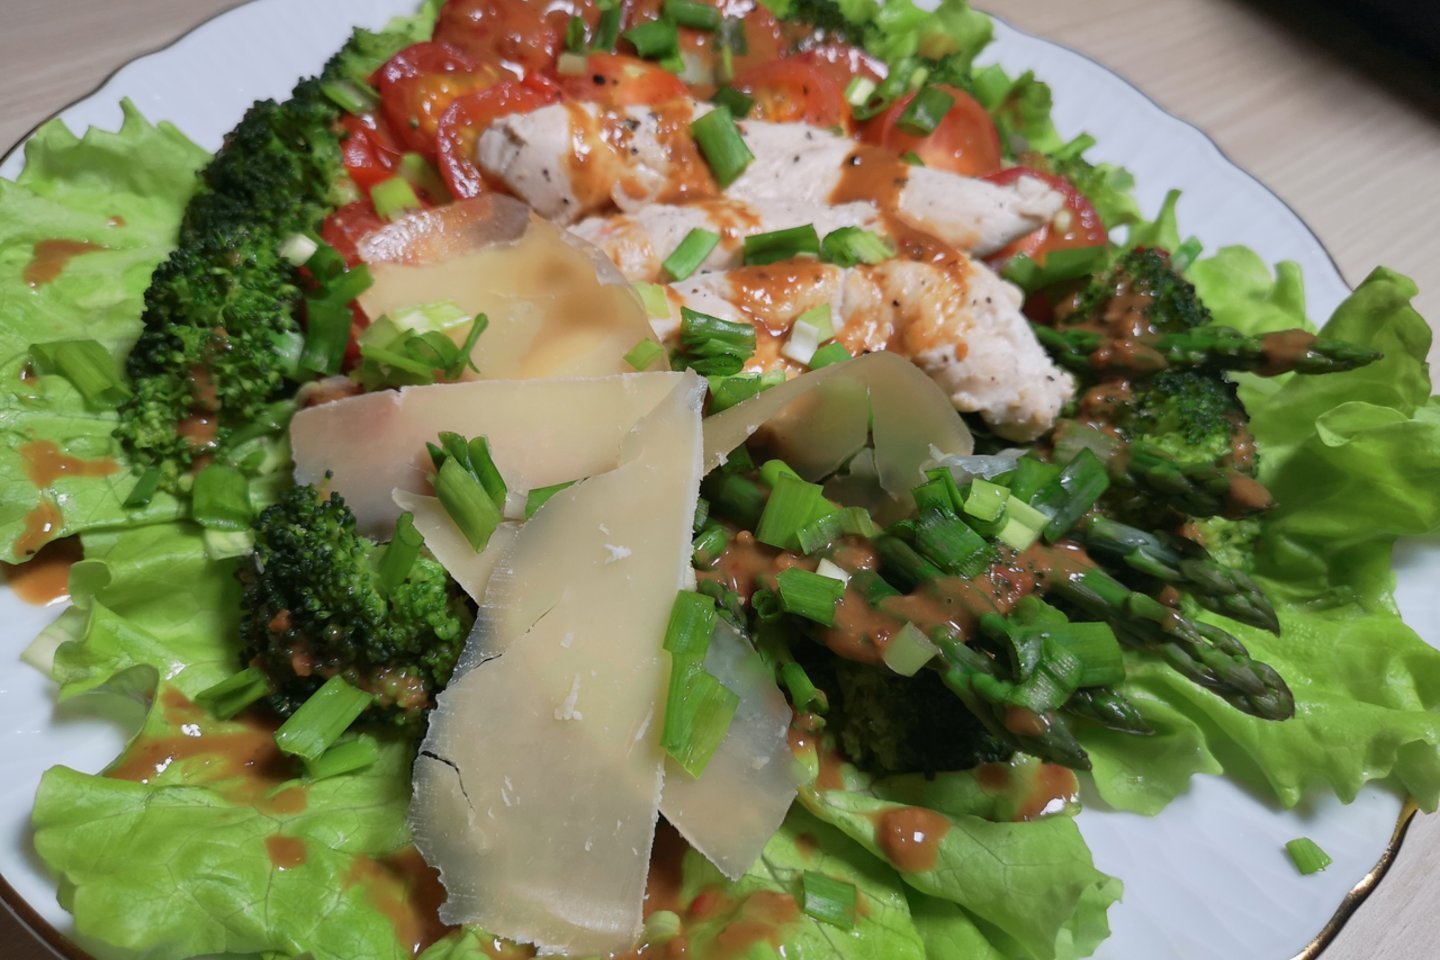  Šiltos brokolių salotos su vištiena.<br> Laidos „Virtuvės revizija“ stop kadras.